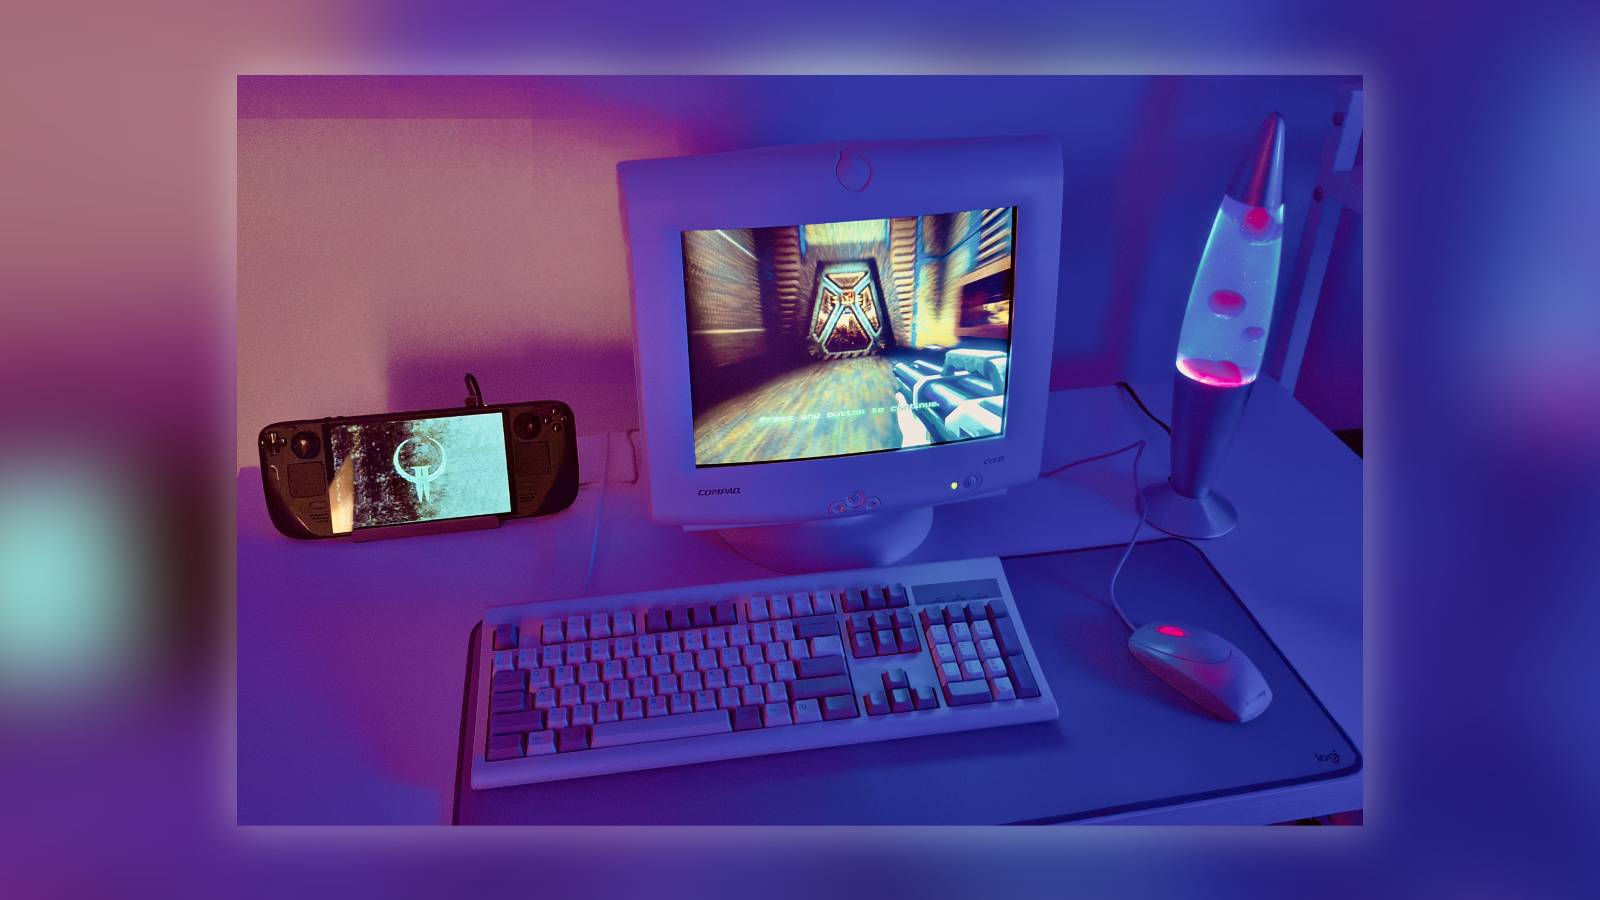 Image from the r/Steam Deck SubReddit titled, 'My Steam Deck desktop setup.'